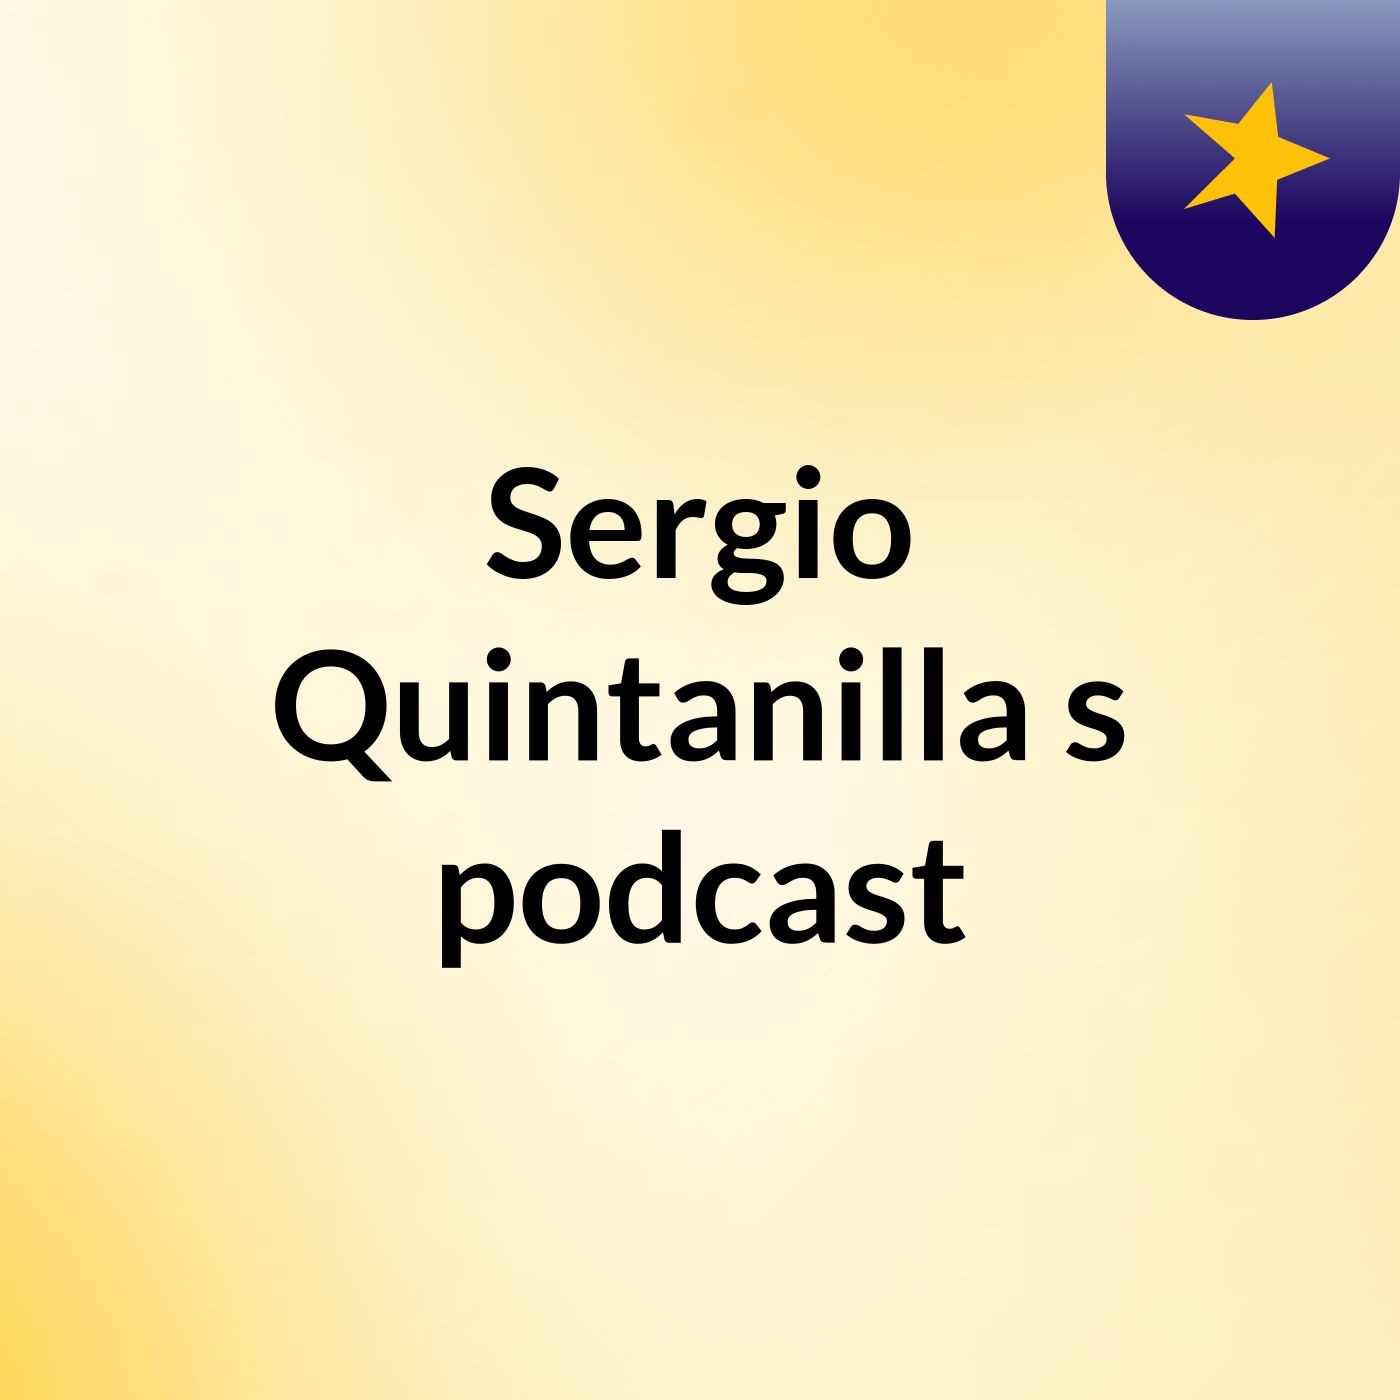 Sergio Quintanilla's podcast